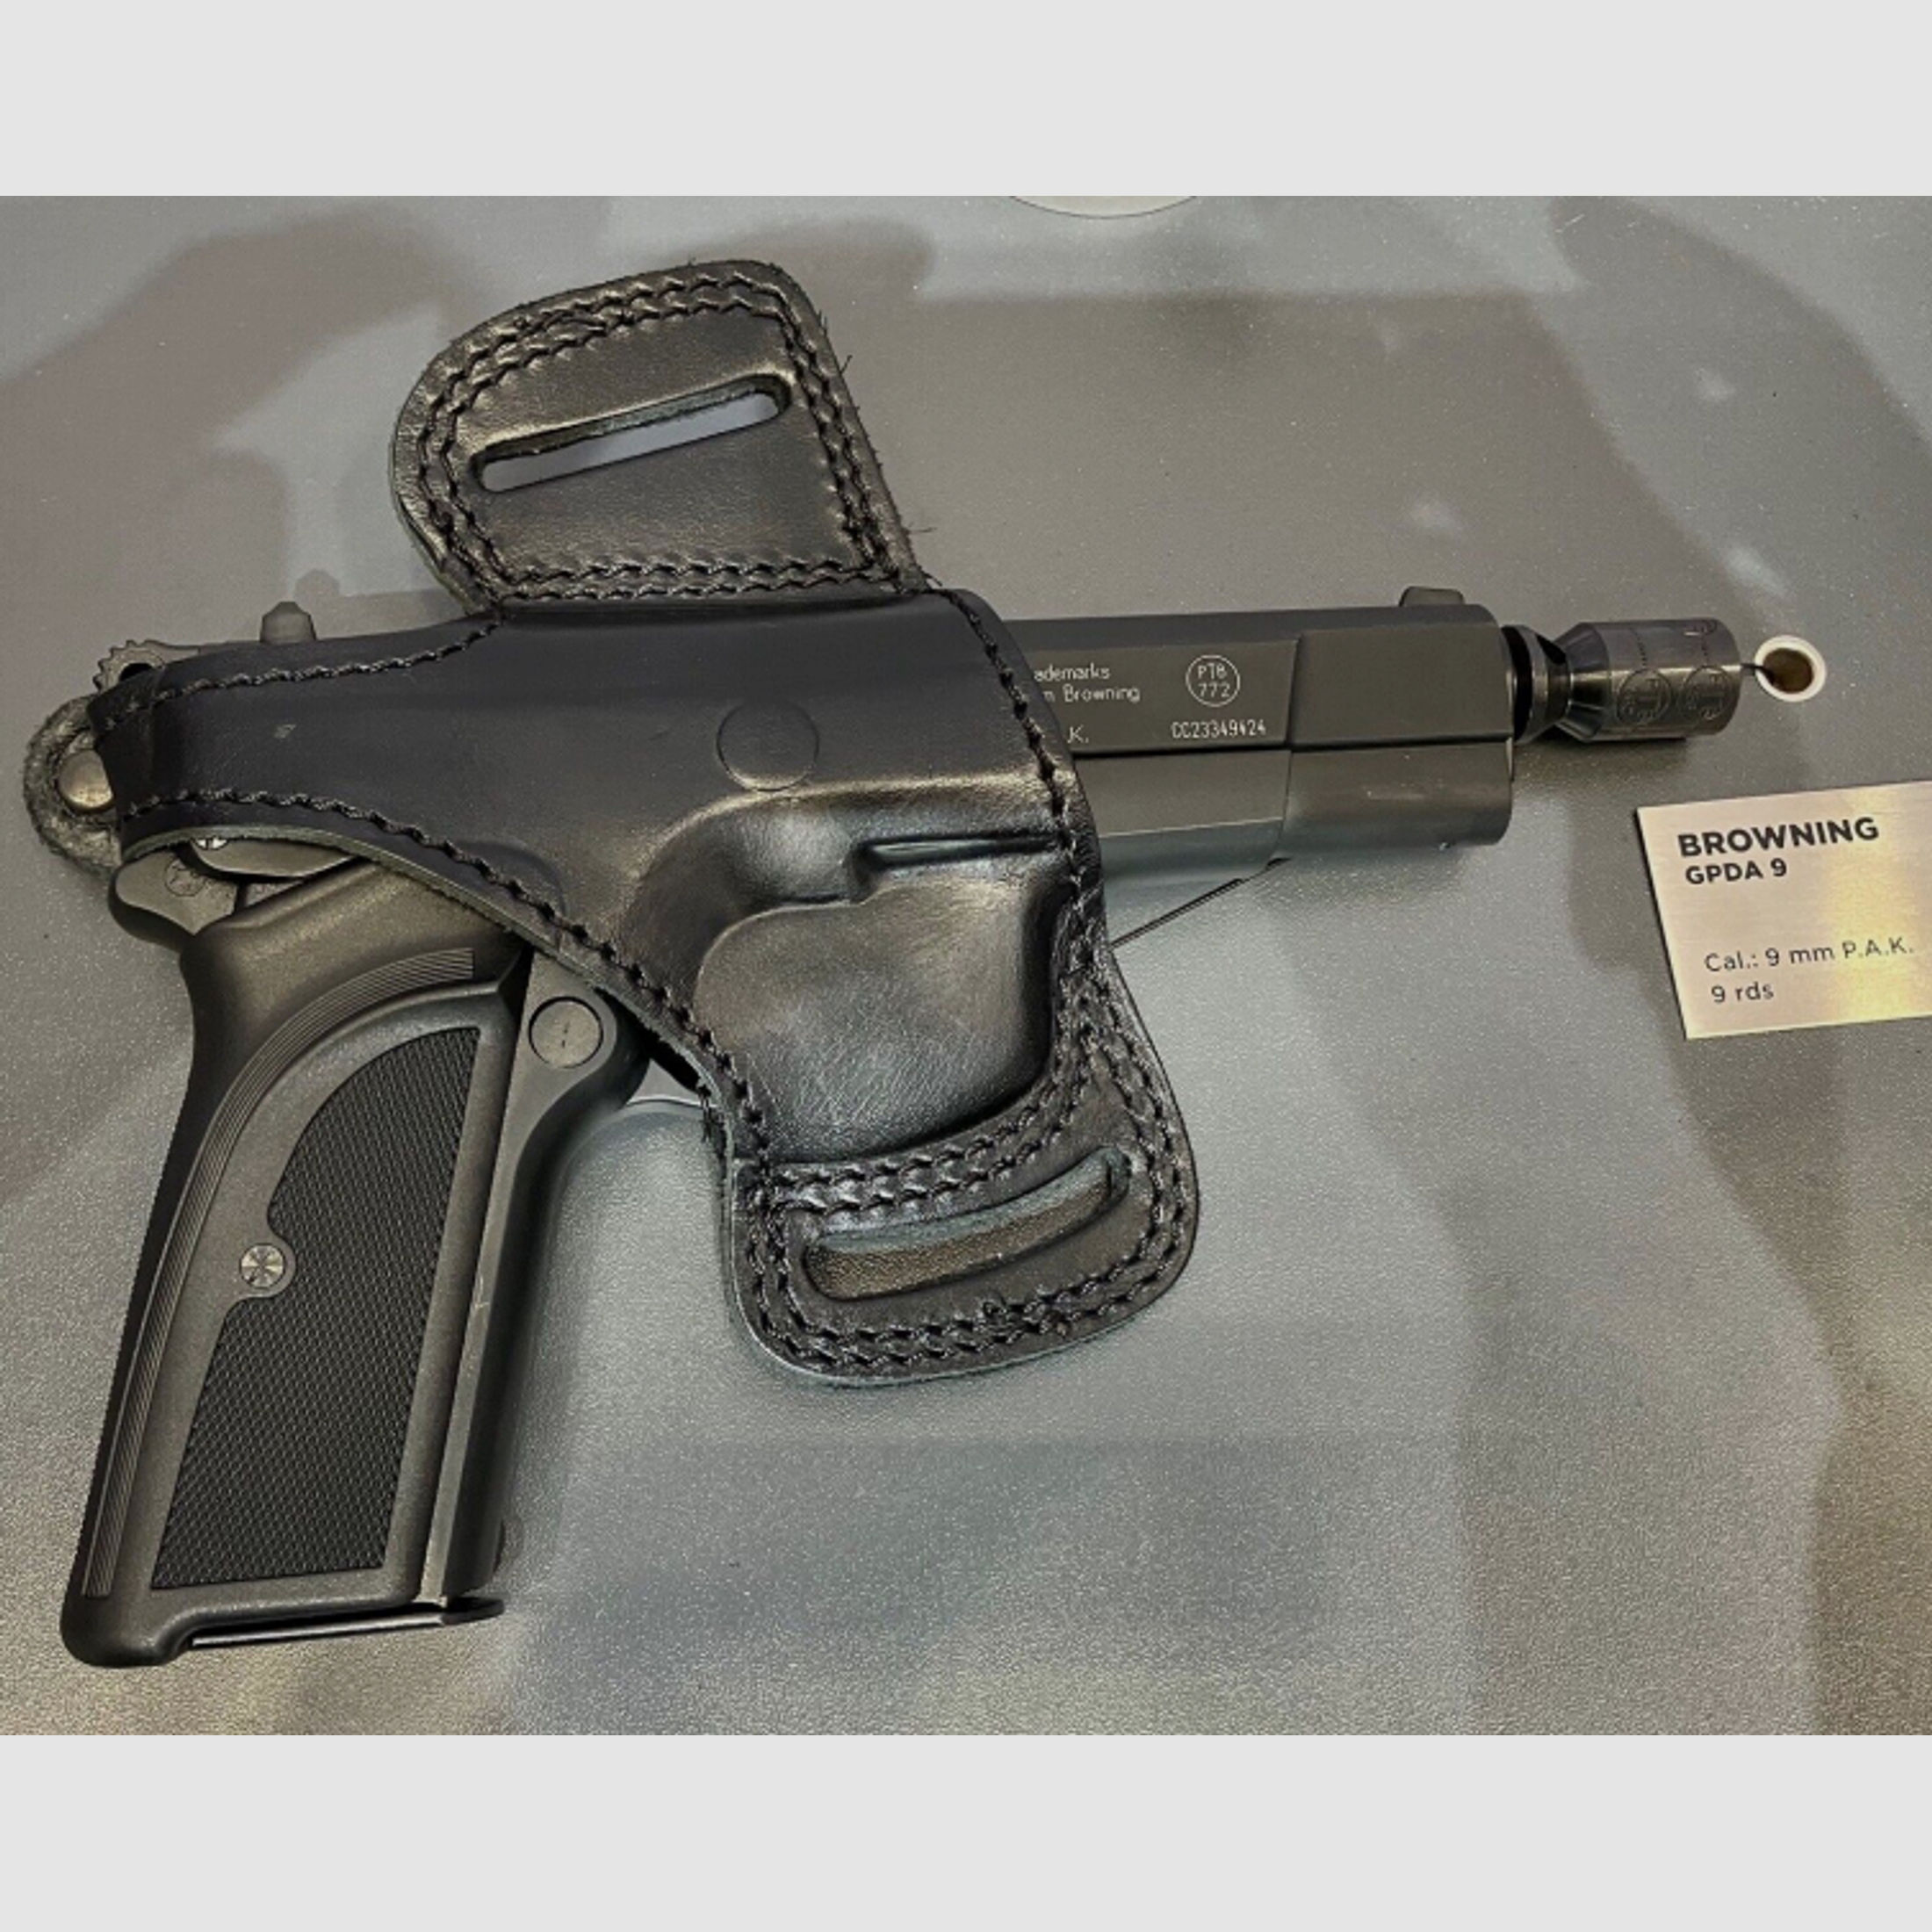 Lederholster für Walther P88, P22 (nicht die Ready), Browning GPDA9 *Rechtshänder*